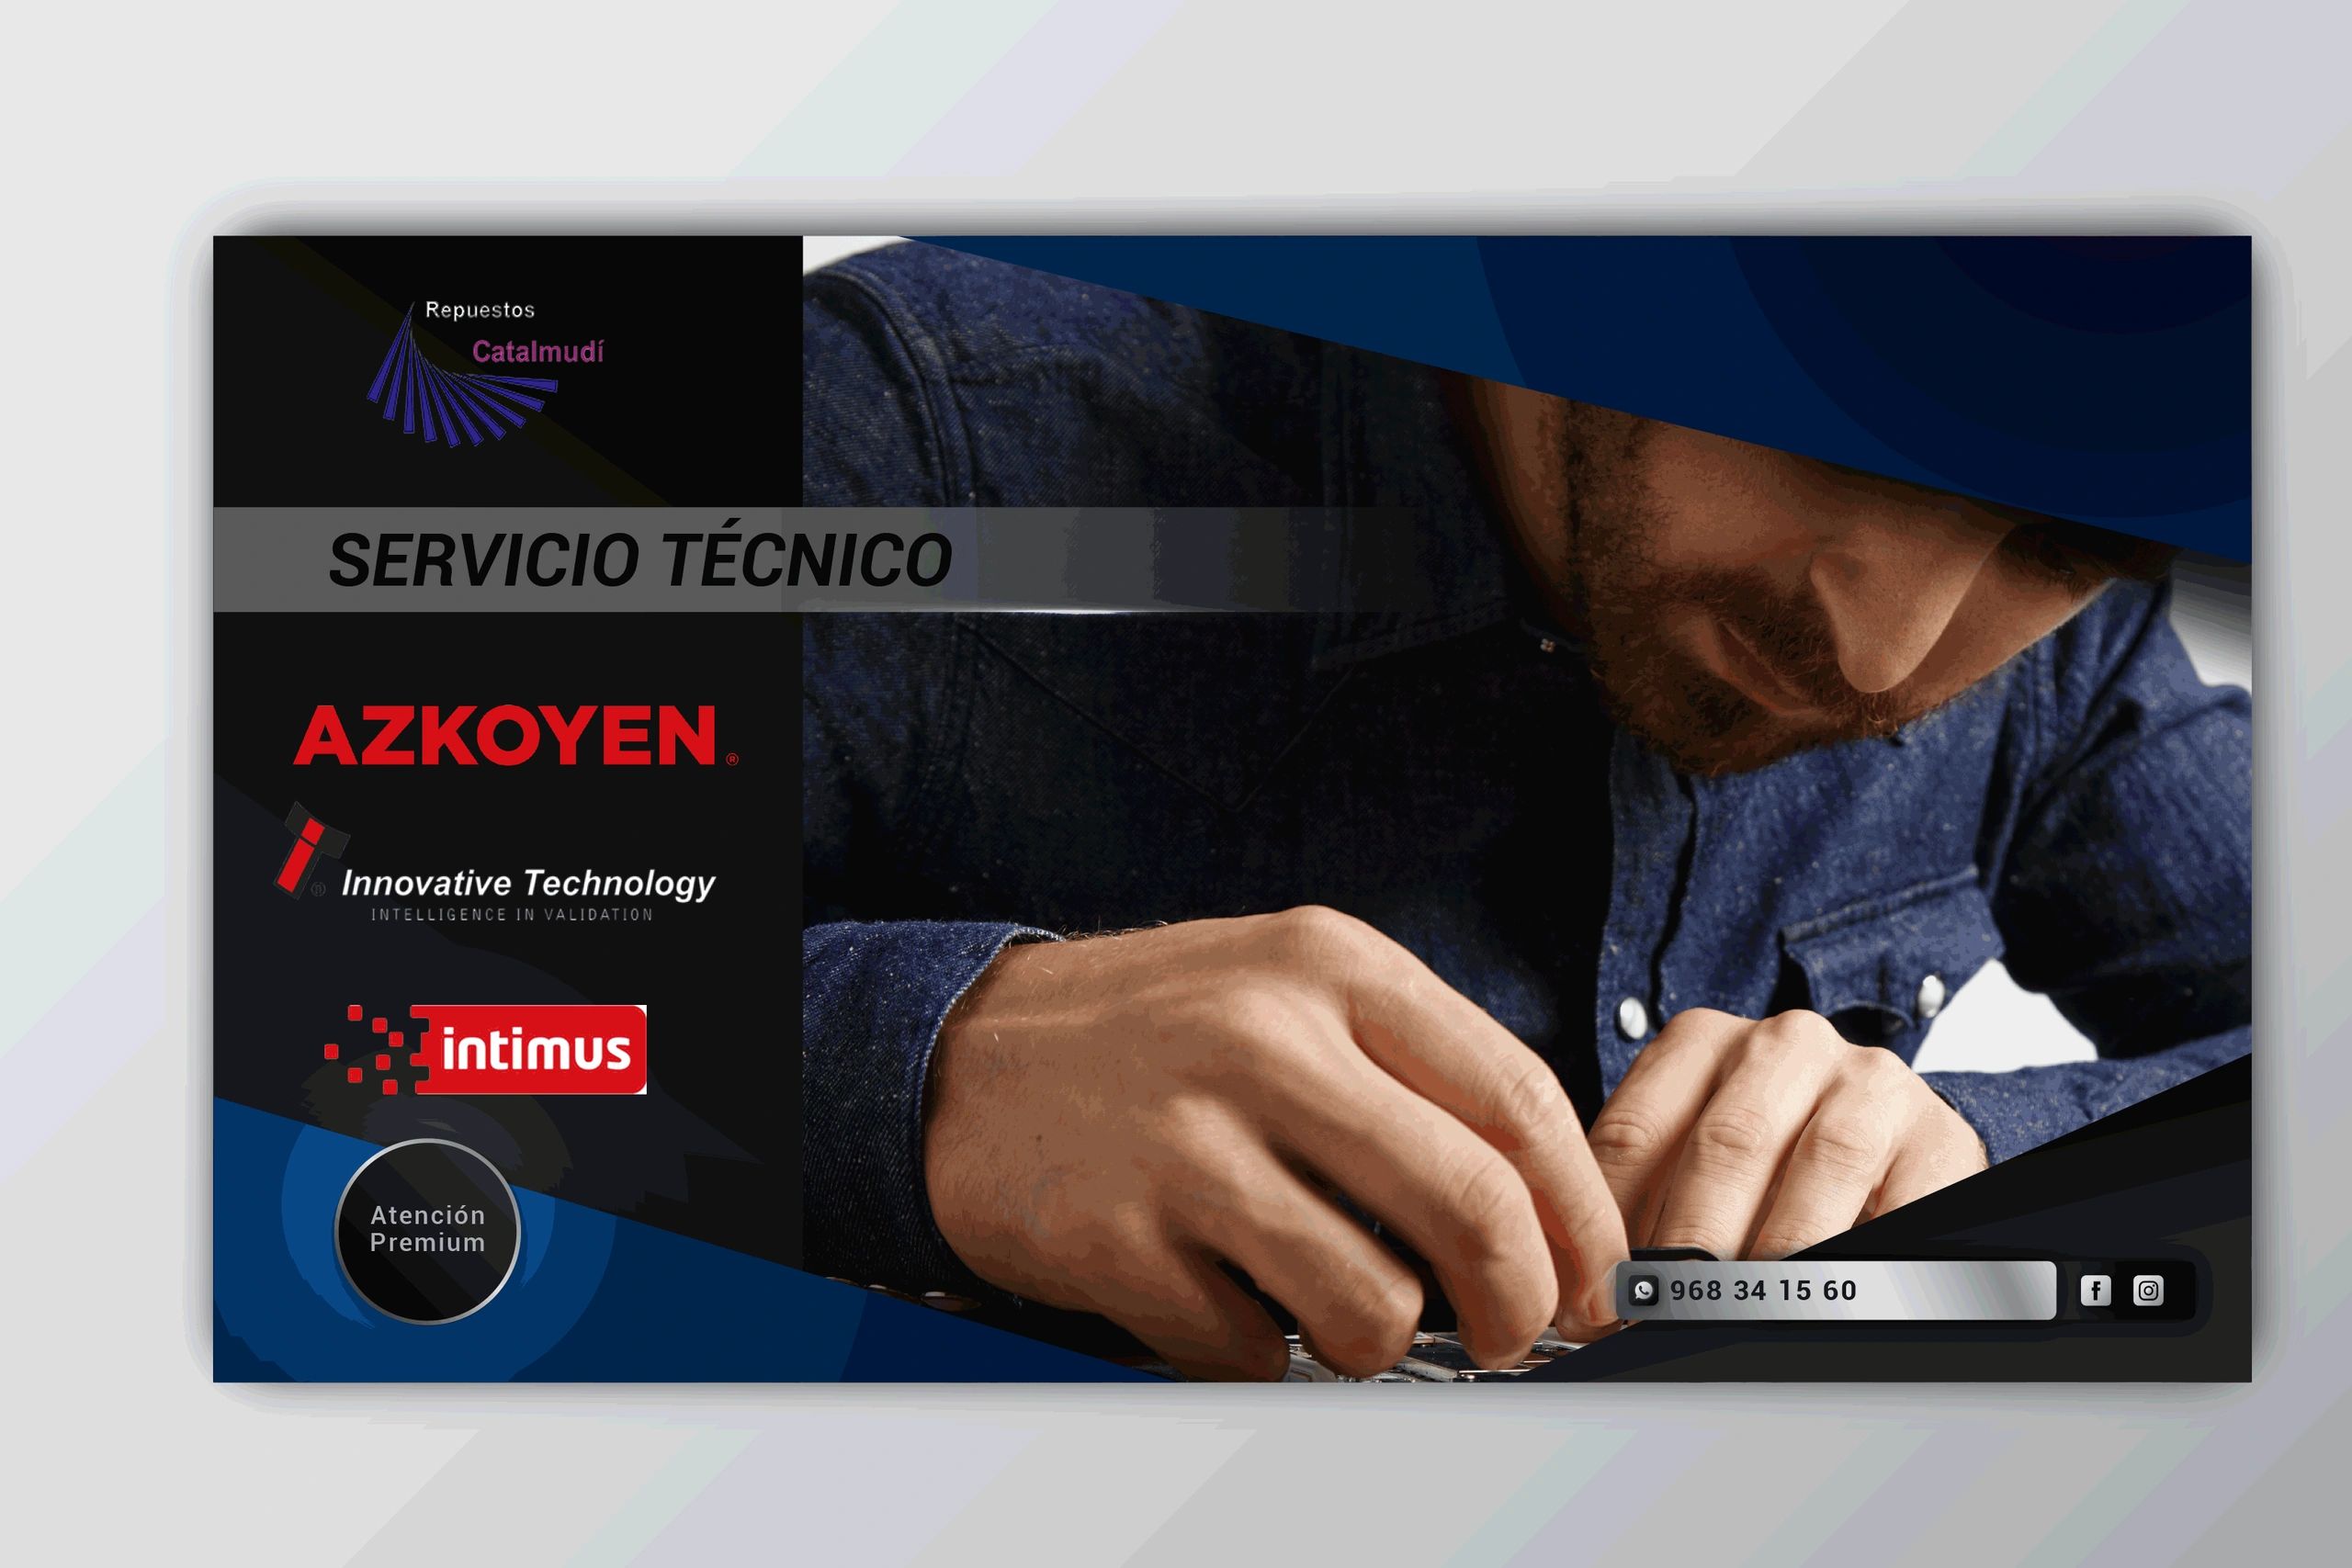 Servicio técnico de Azkoyen, innovative technology e Intimus. Servicio técnico Premium